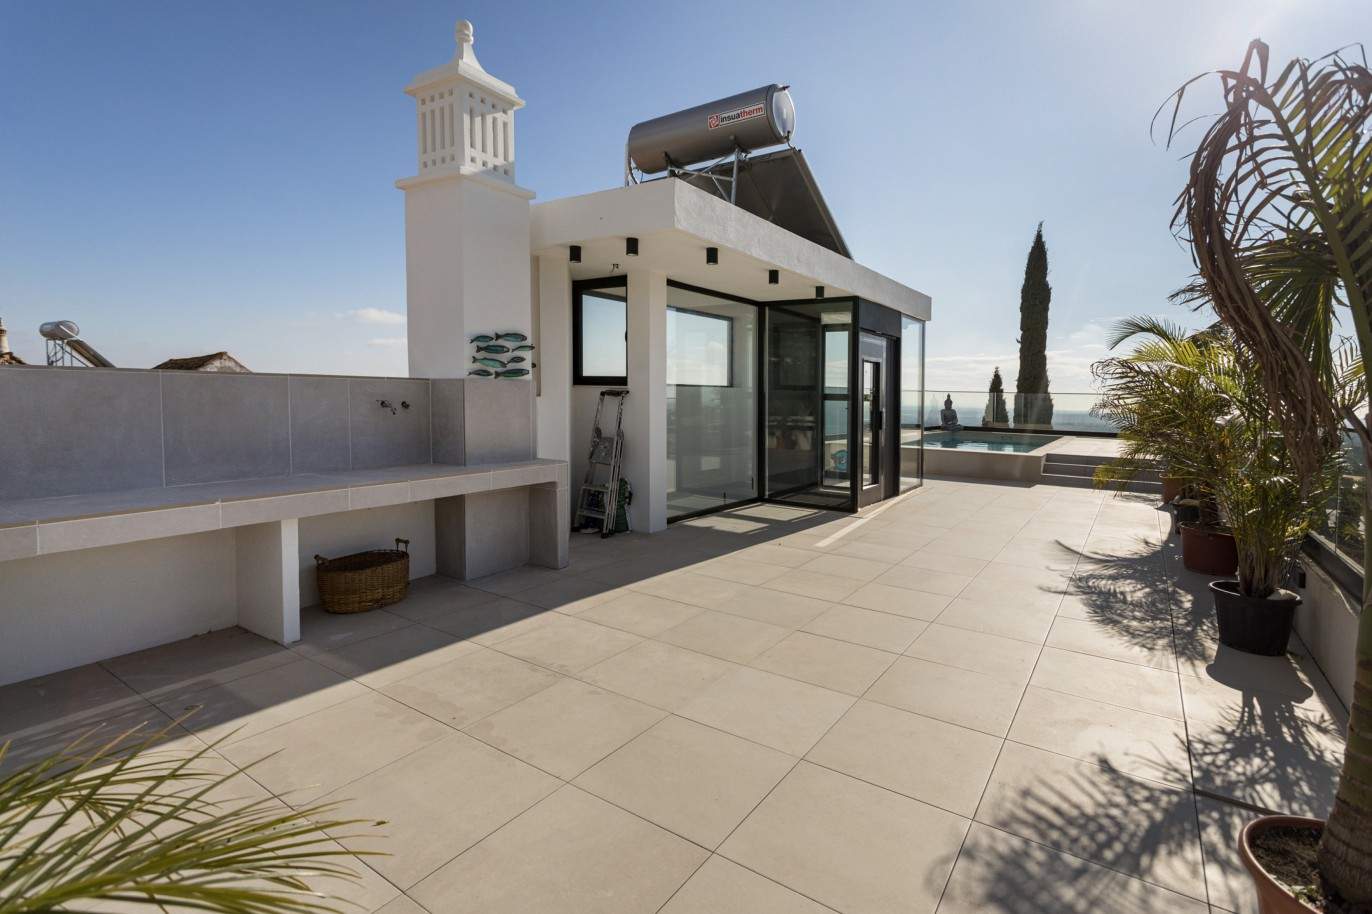 Villa de 3 dormitorios, con piscina, en venta en Santa Barbara de Nexe, Algarve_213418